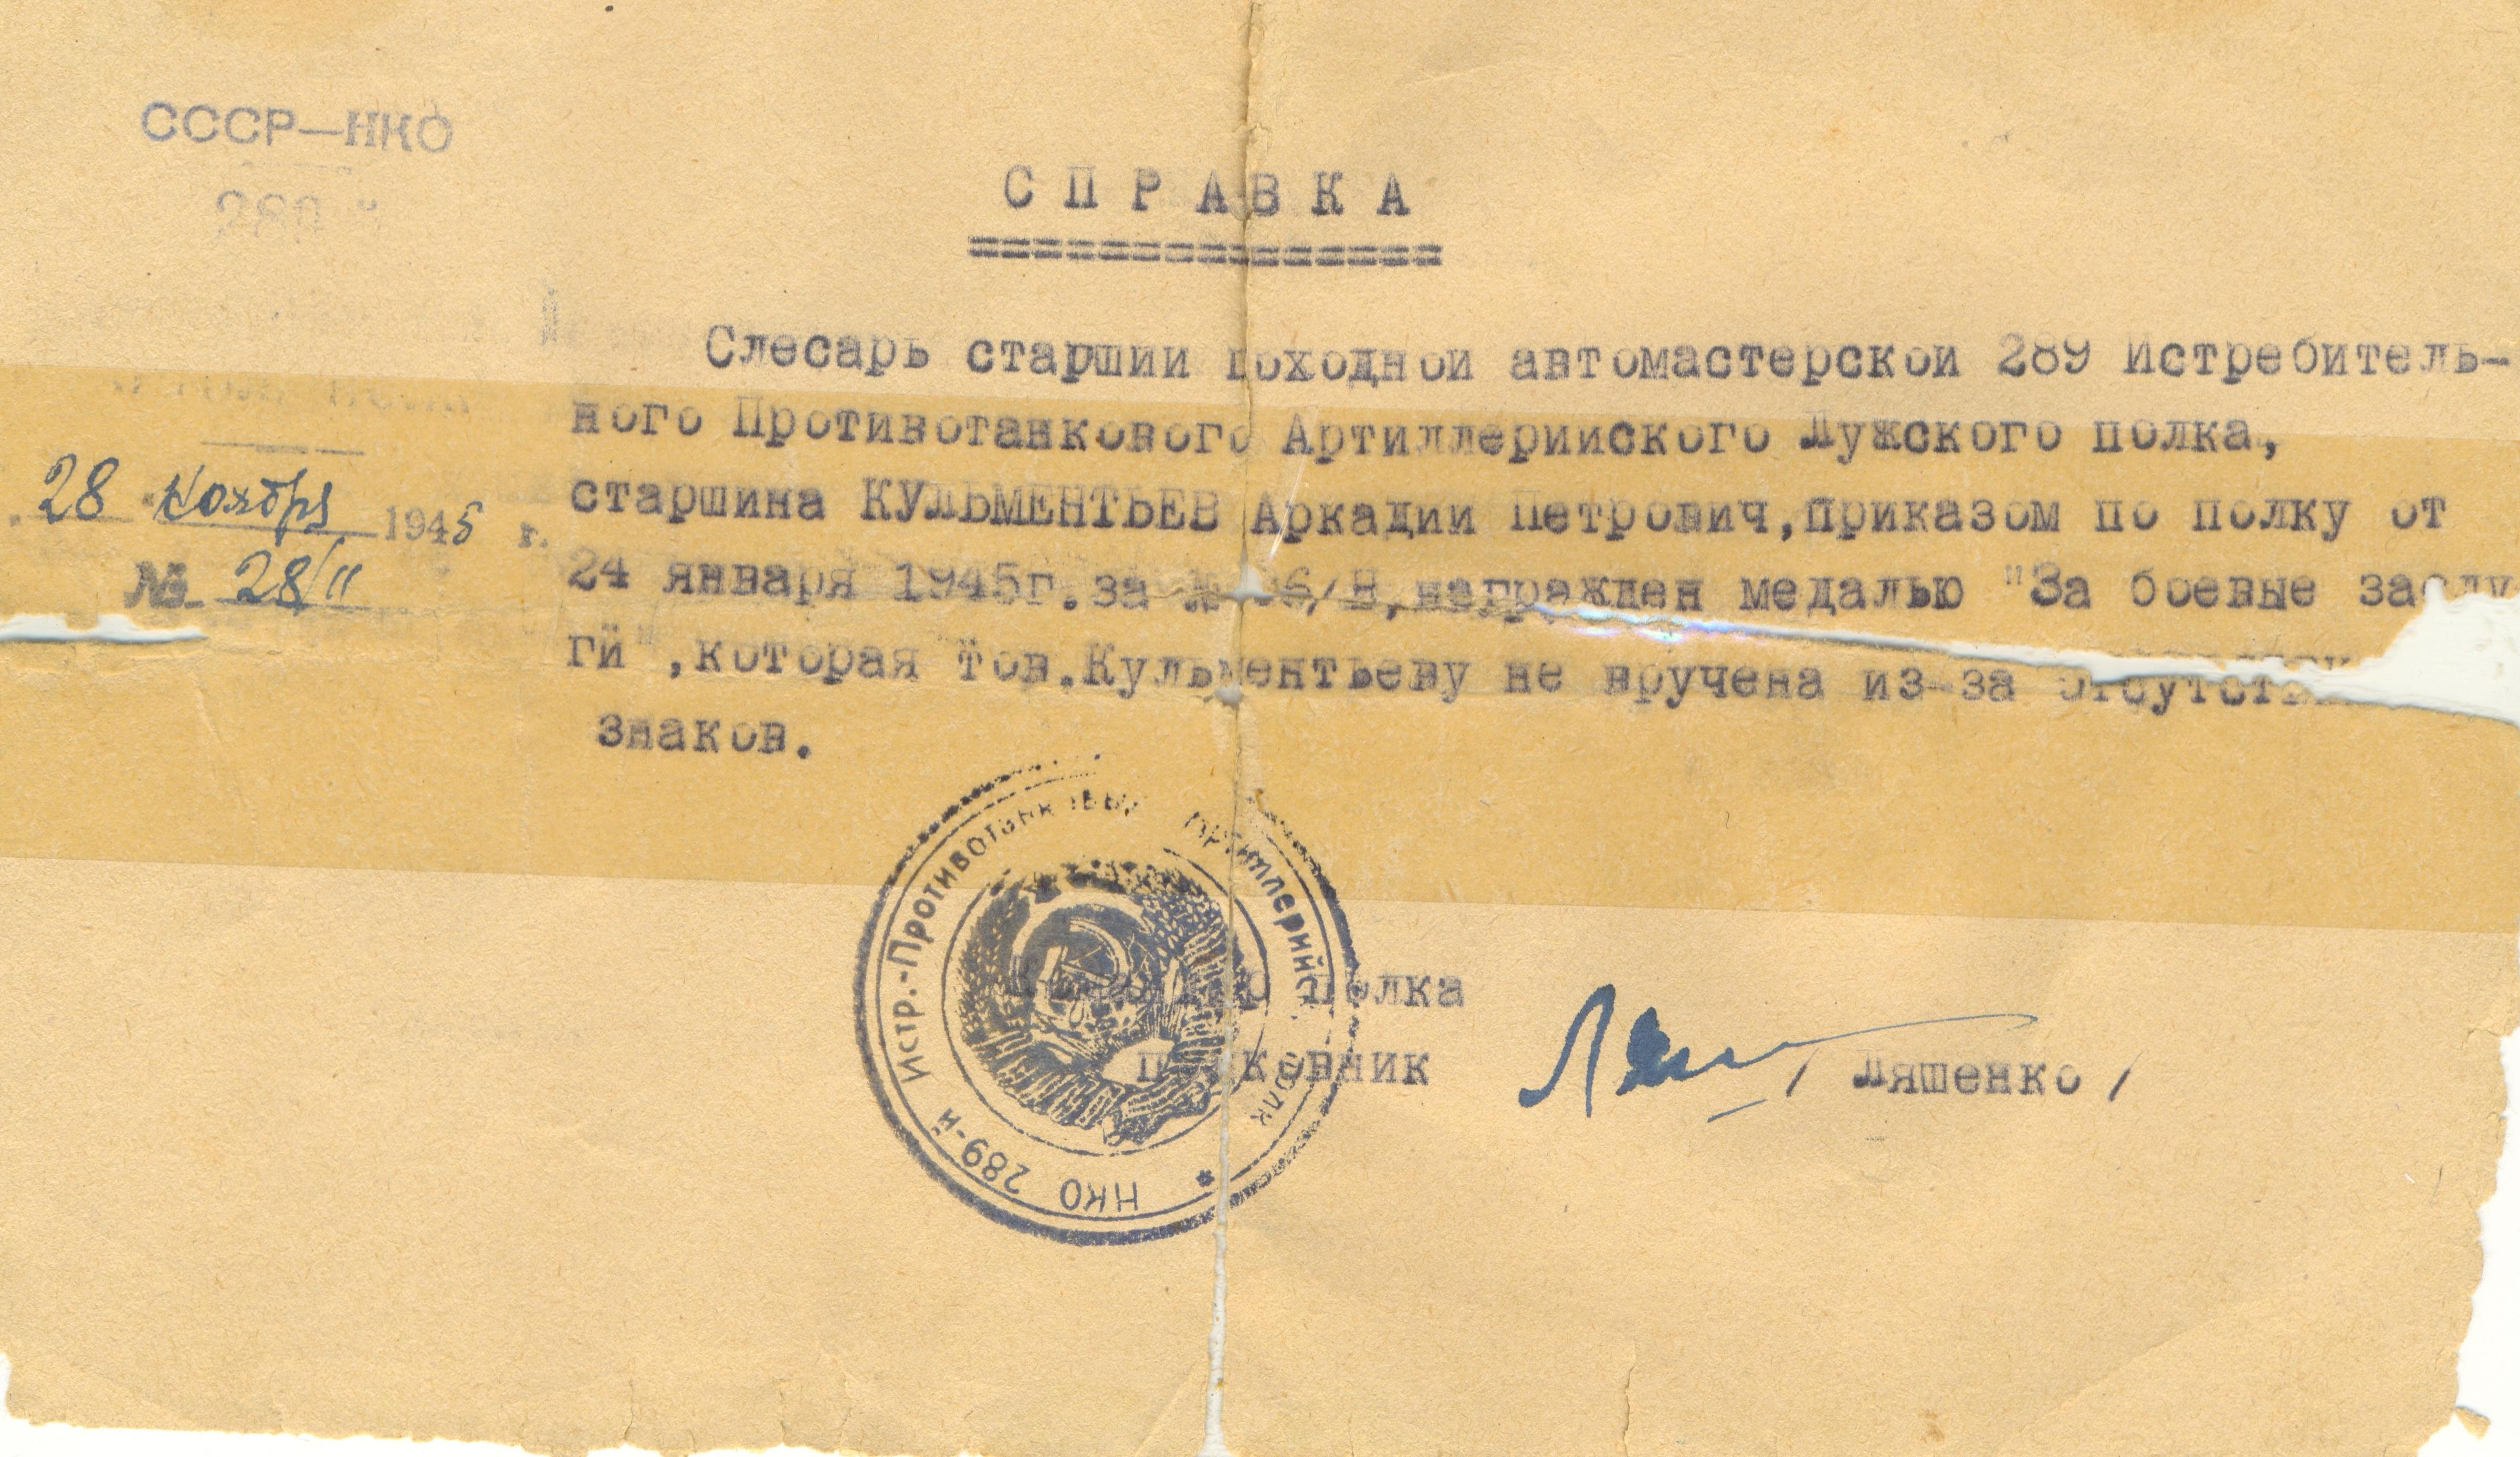 Справка о награждении медалью, ноябрь 1945 года